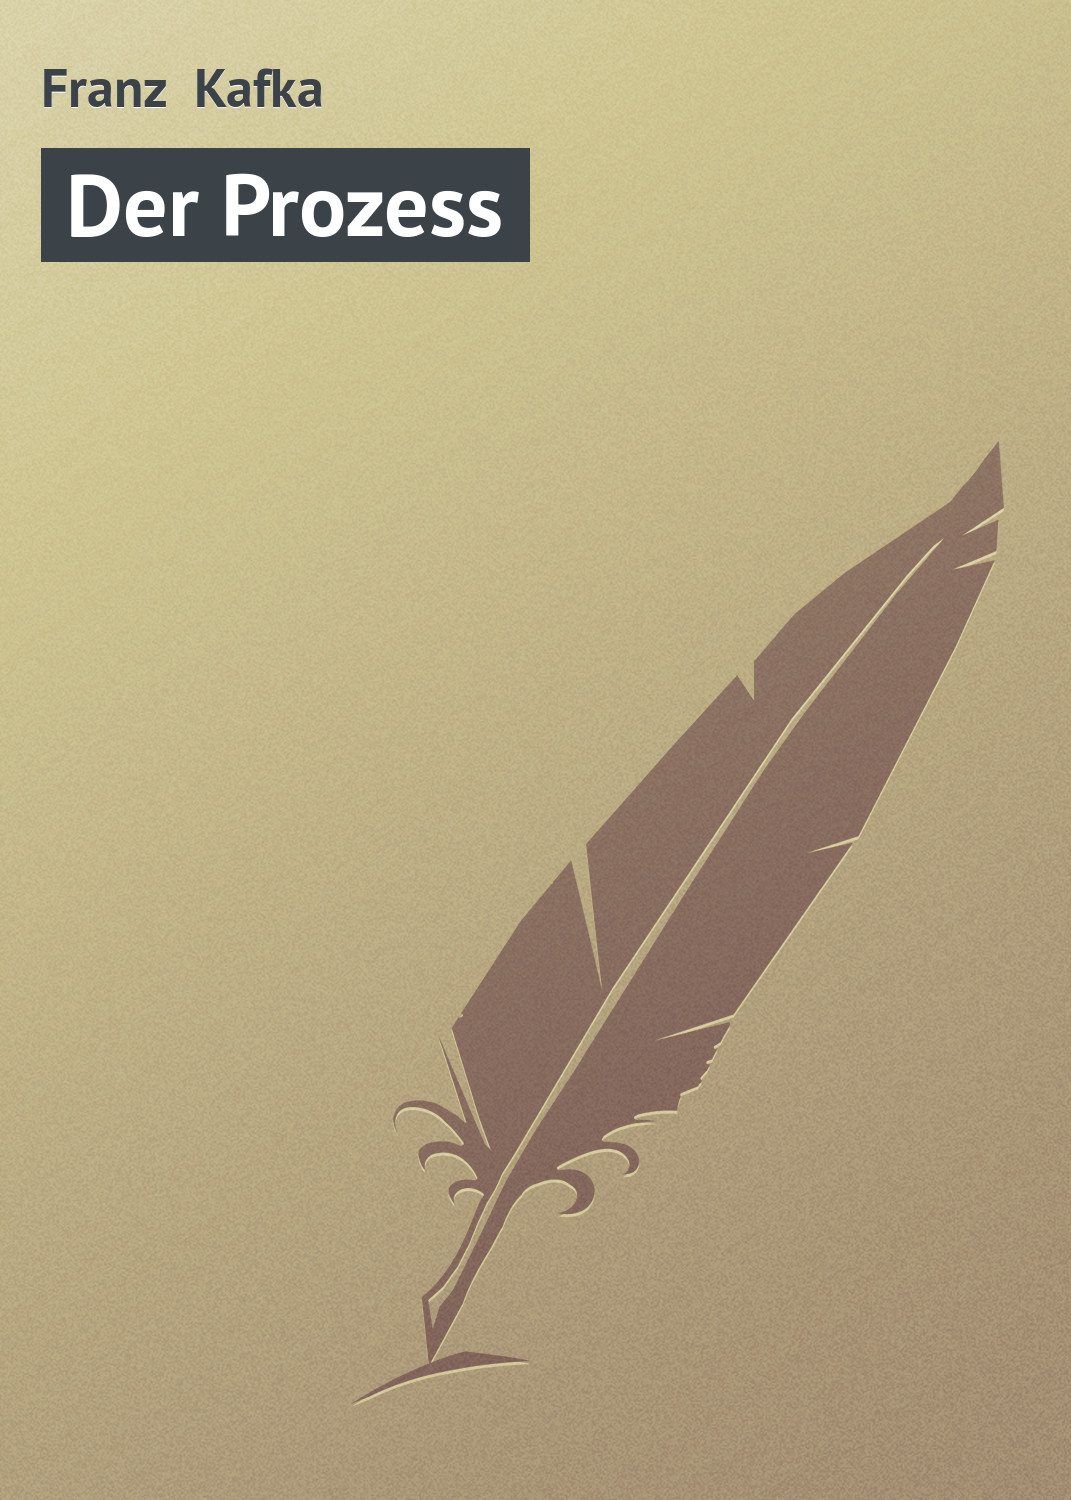 Книга Der Prozess из серии , созданная Franz Kafka, может относится к жанру Зарубежная старинная литература, Зарубежная классика. Стоимость электронной книги Der Prozess с идентификатором 21105134 составляет 5.99 руб.